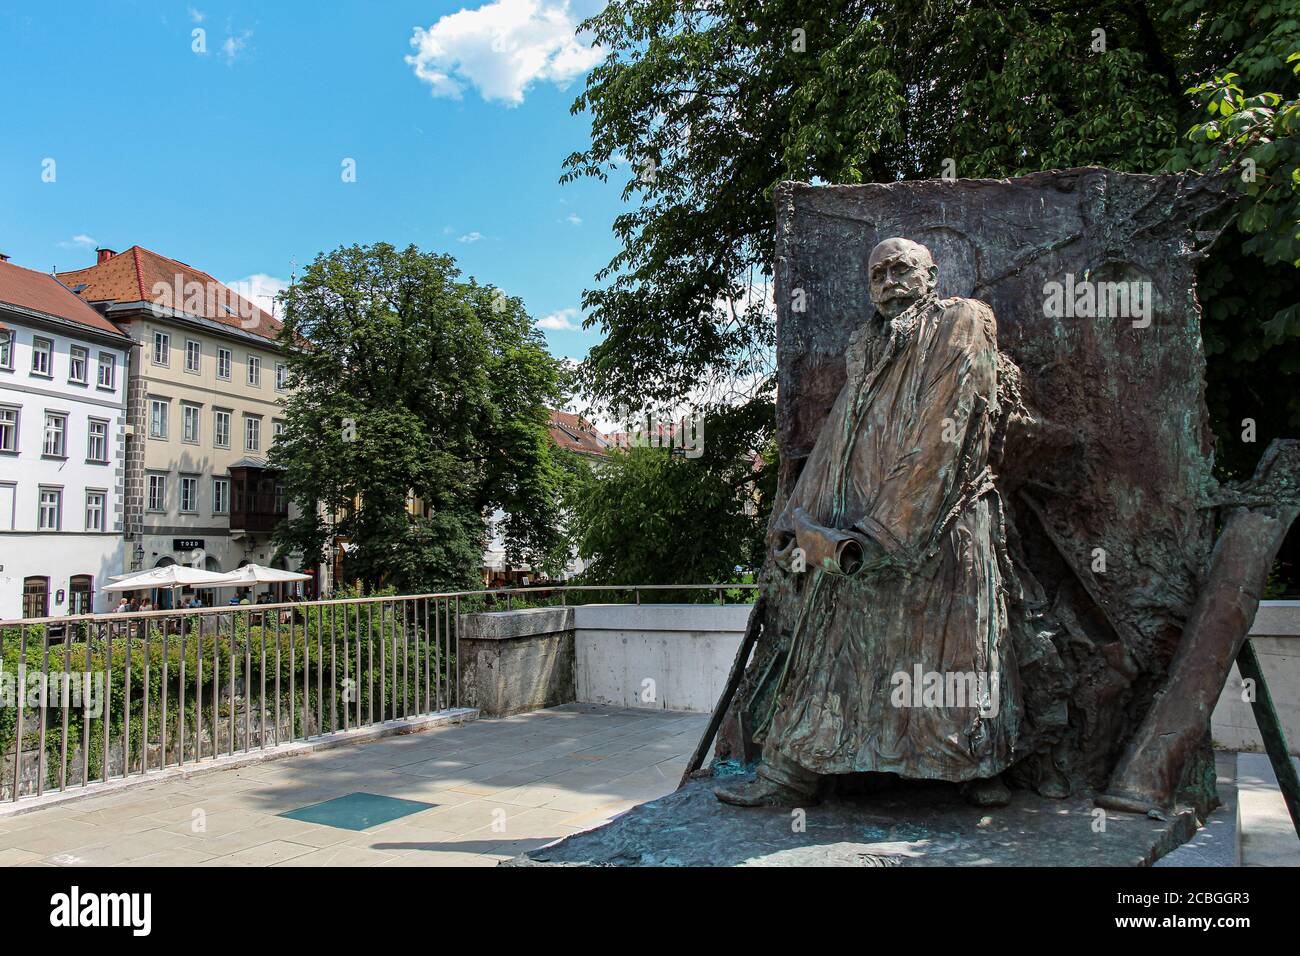 Lubiana, Slovenia - 16 luglio 2018: Scultura della statua di Ivan Hribar in Piazza della Giustizia, Lubiana, Slovenia Foto Stock